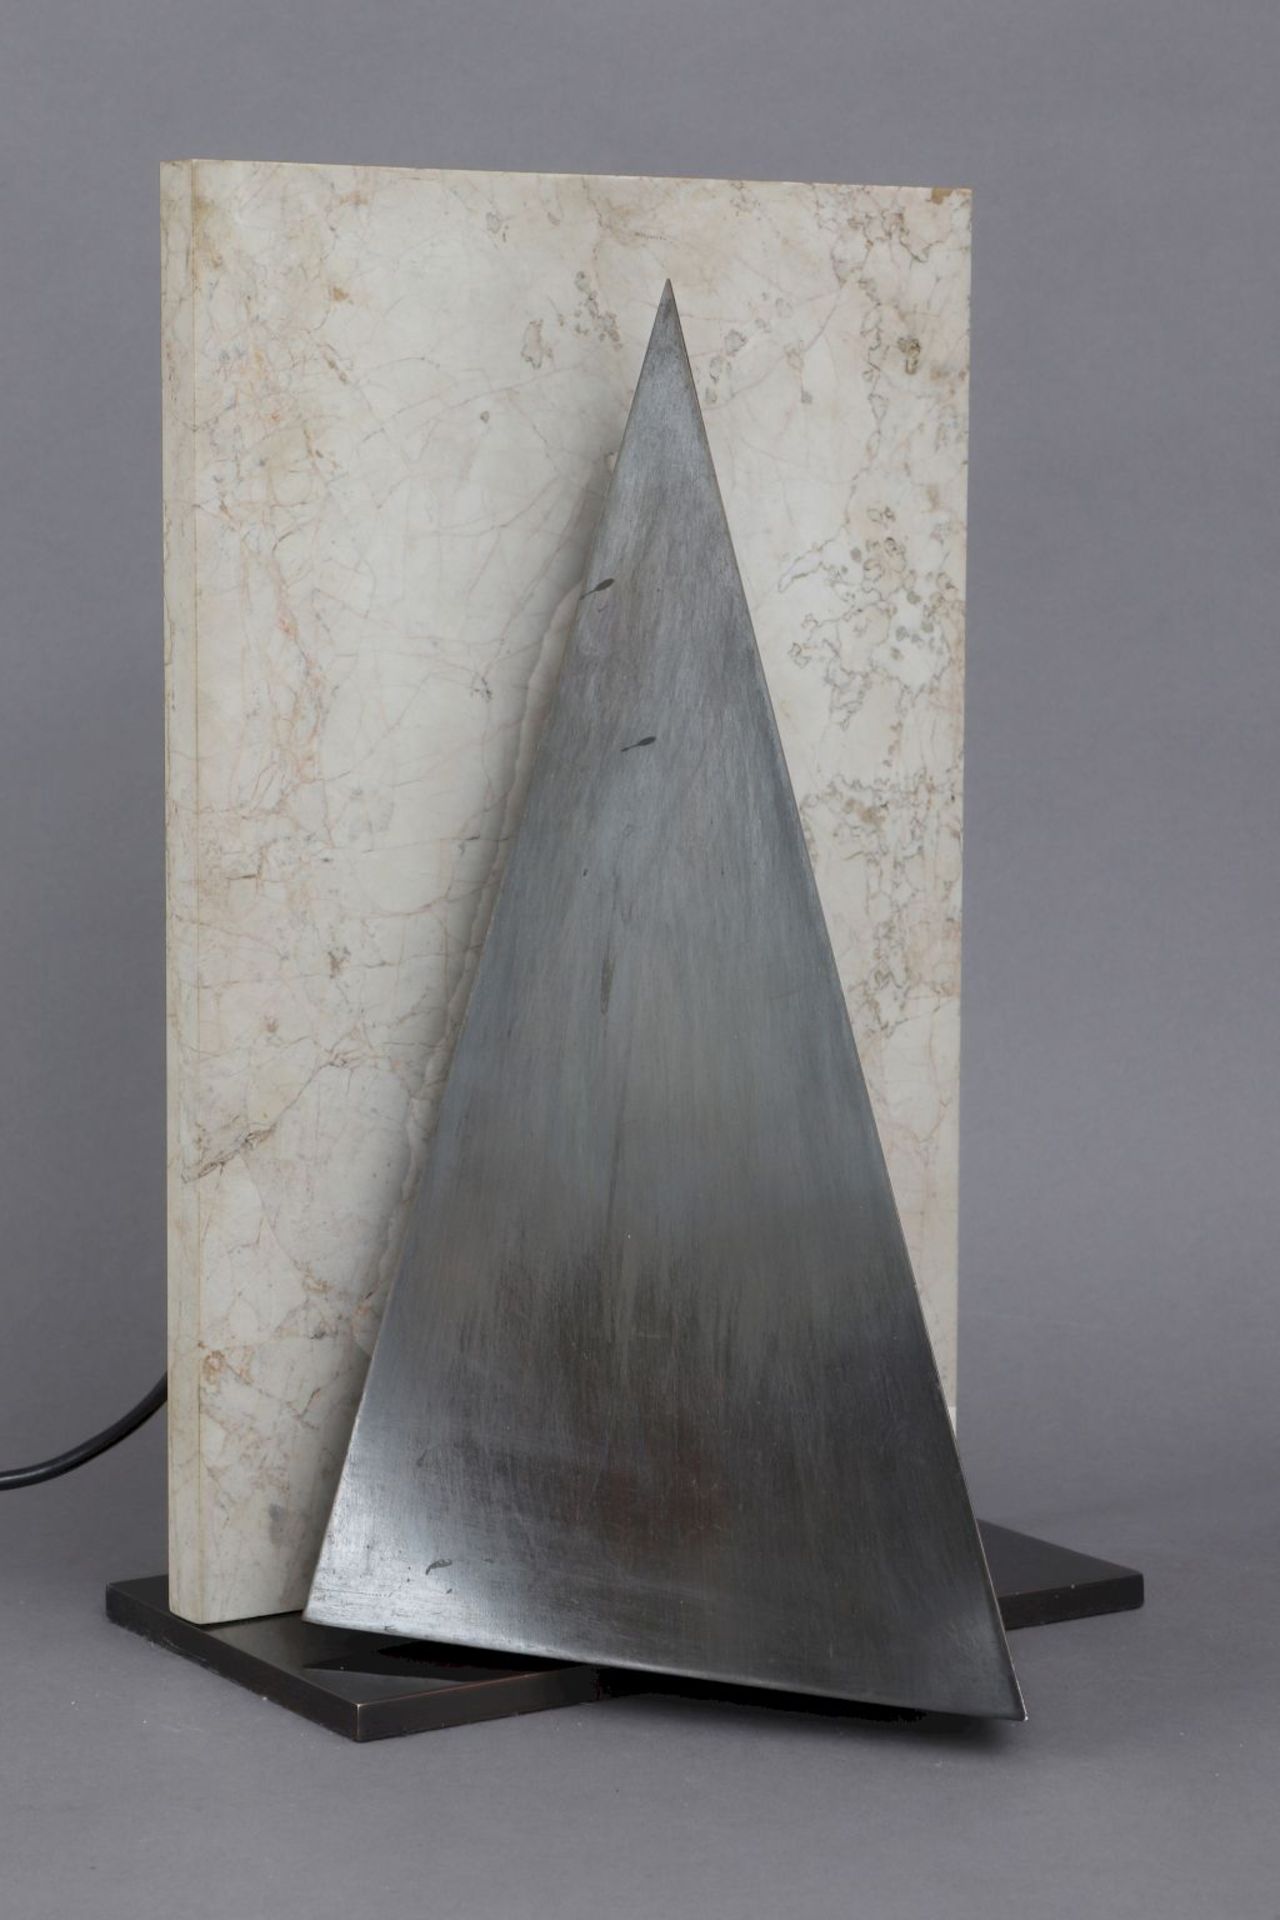 PETER PRELLER Design TischlampeBronze und heller Carrara-Marmor, skulpturale Form mit dreieckig